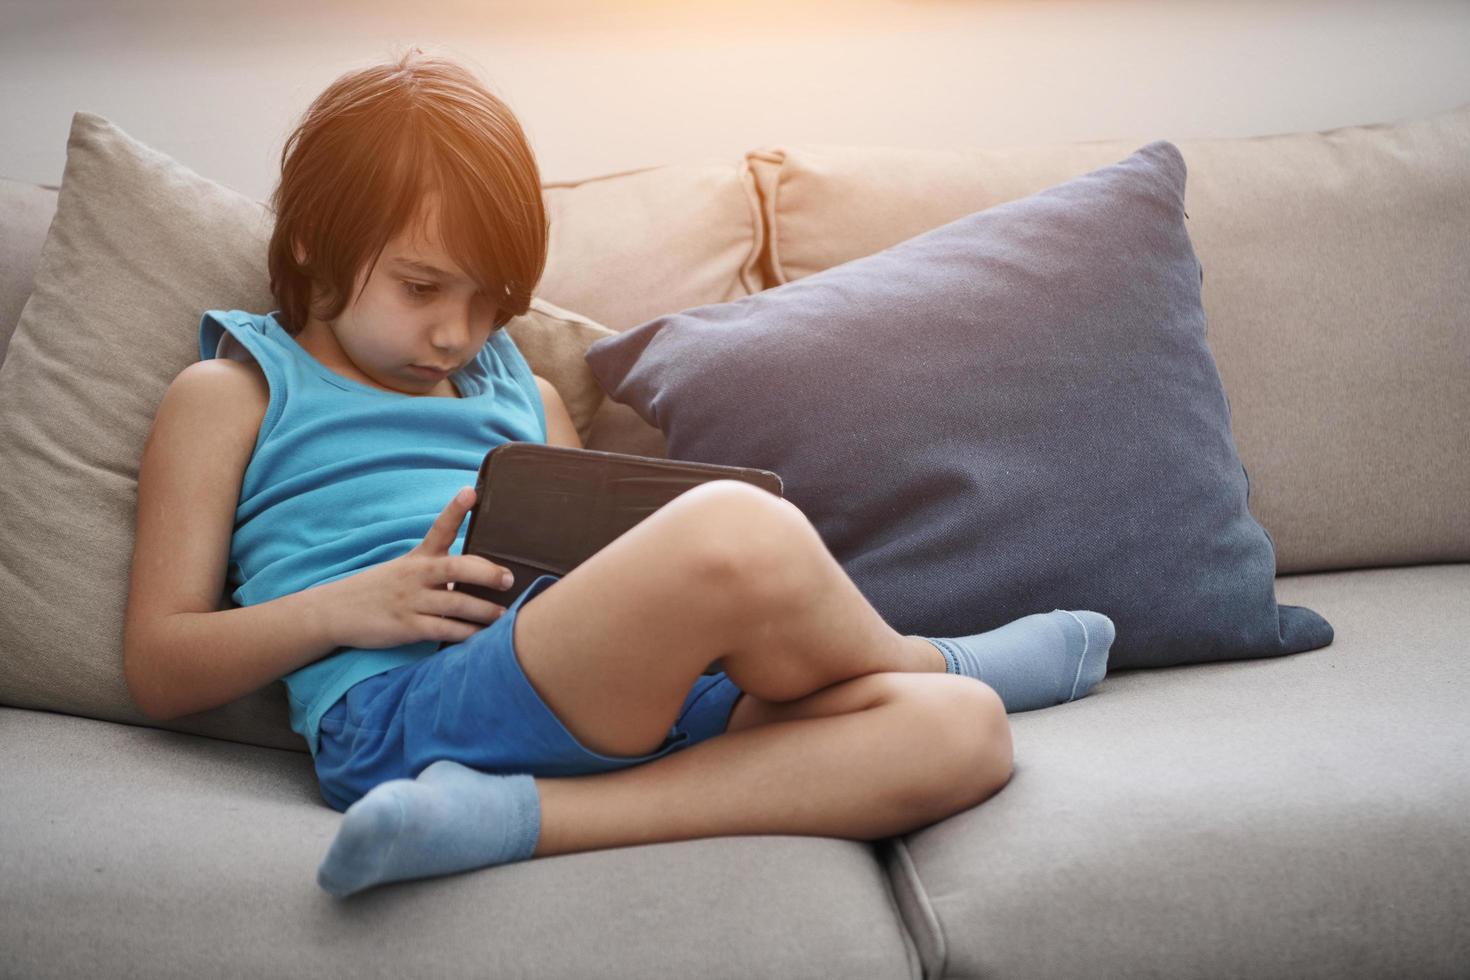 poco arabo ragazzo seduta su divano e giocando gioco su digitale tavoletta foto